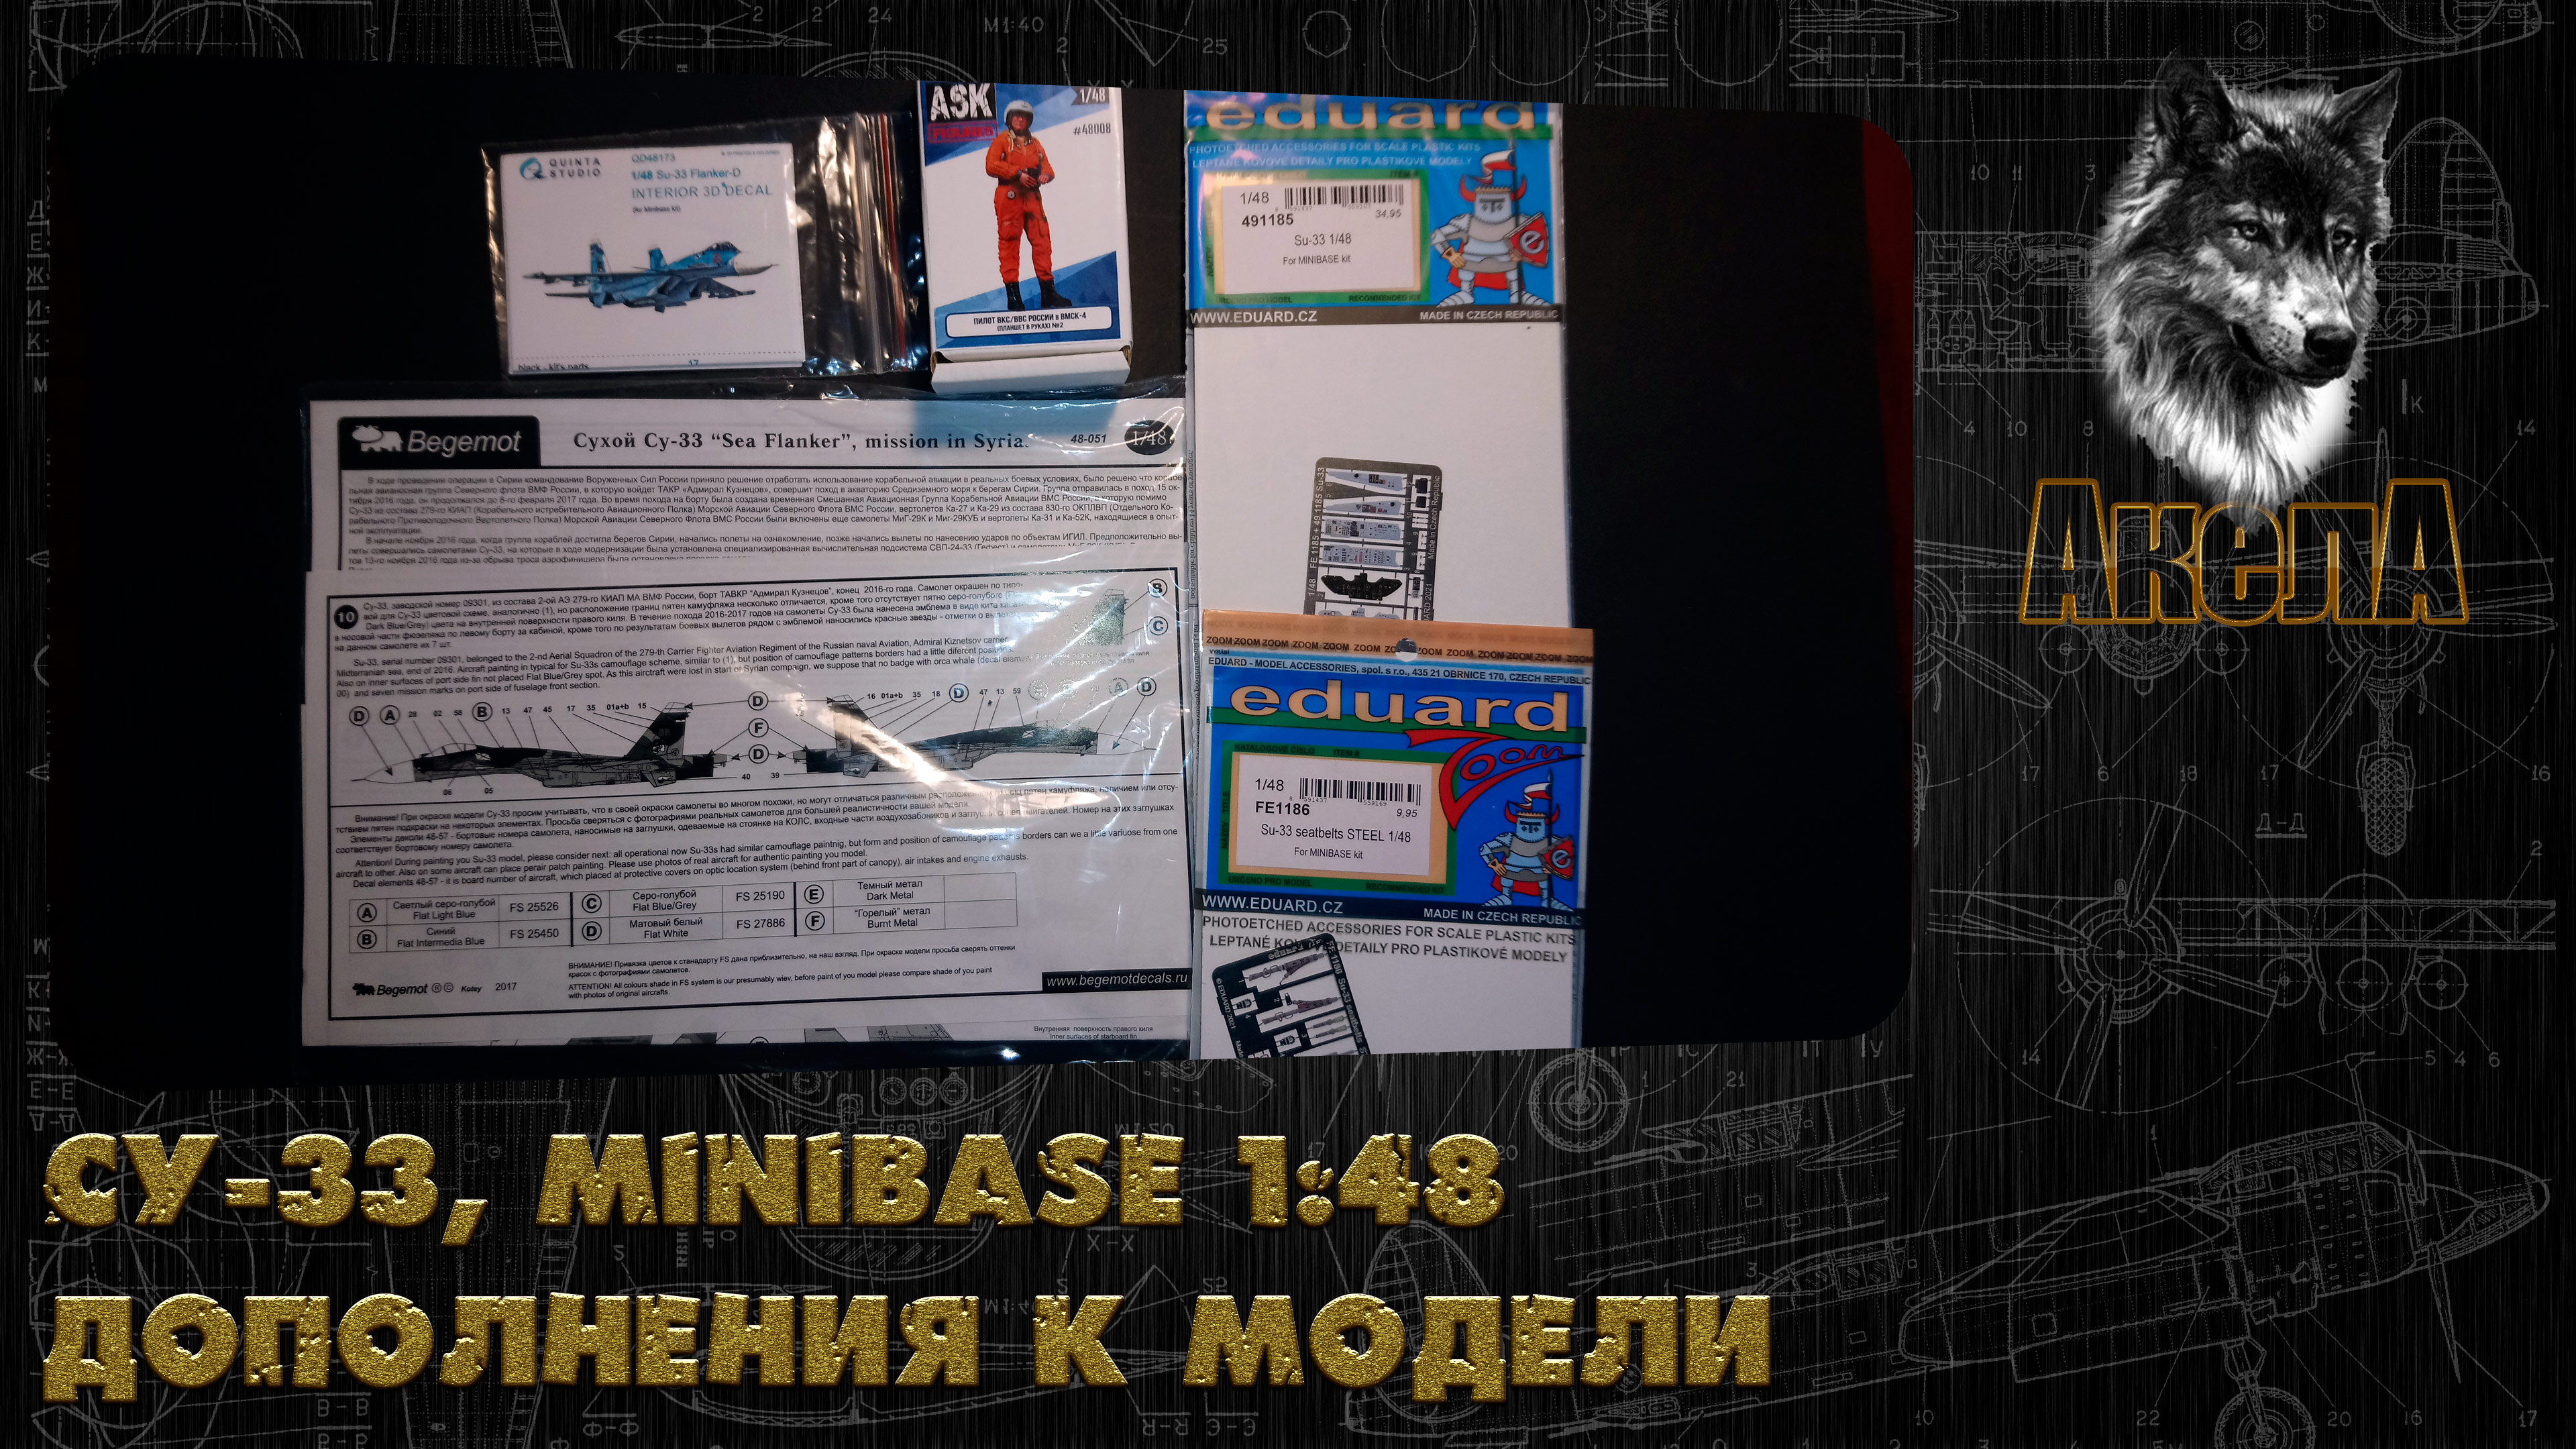 Дополнения для Су-33, Minibase 1/48